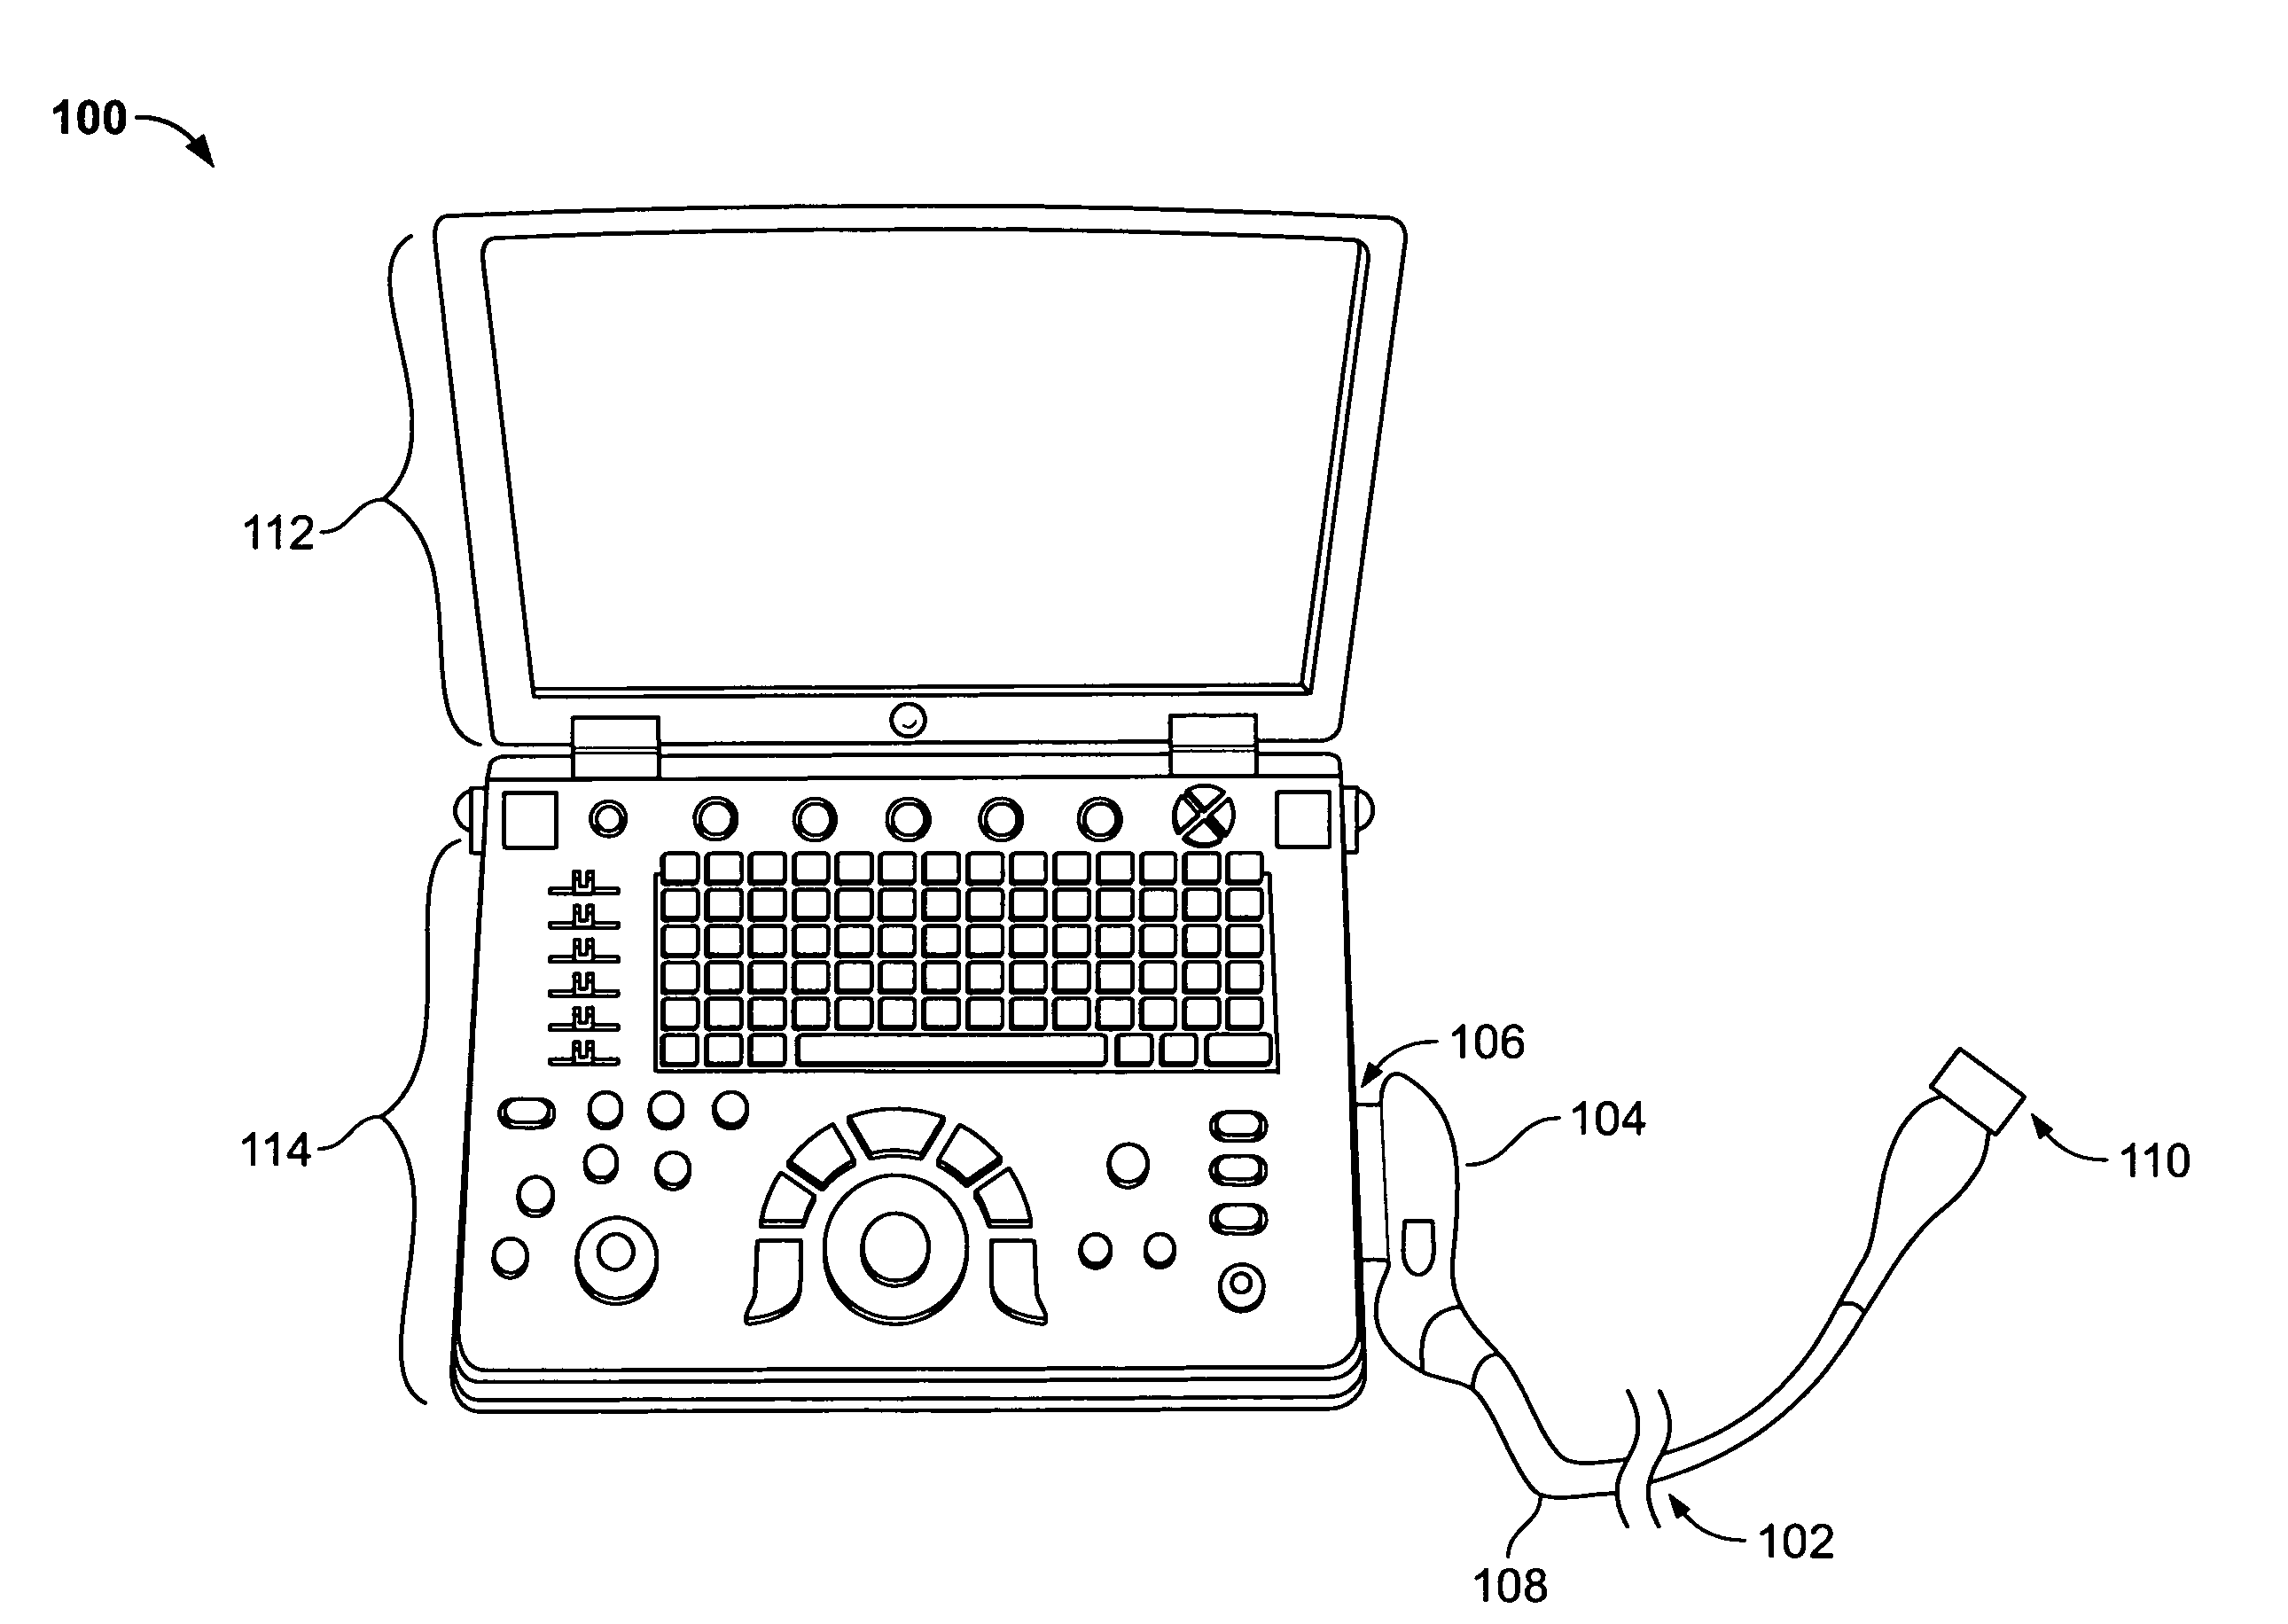 Probe holder for portable diagnostic ultrasound system